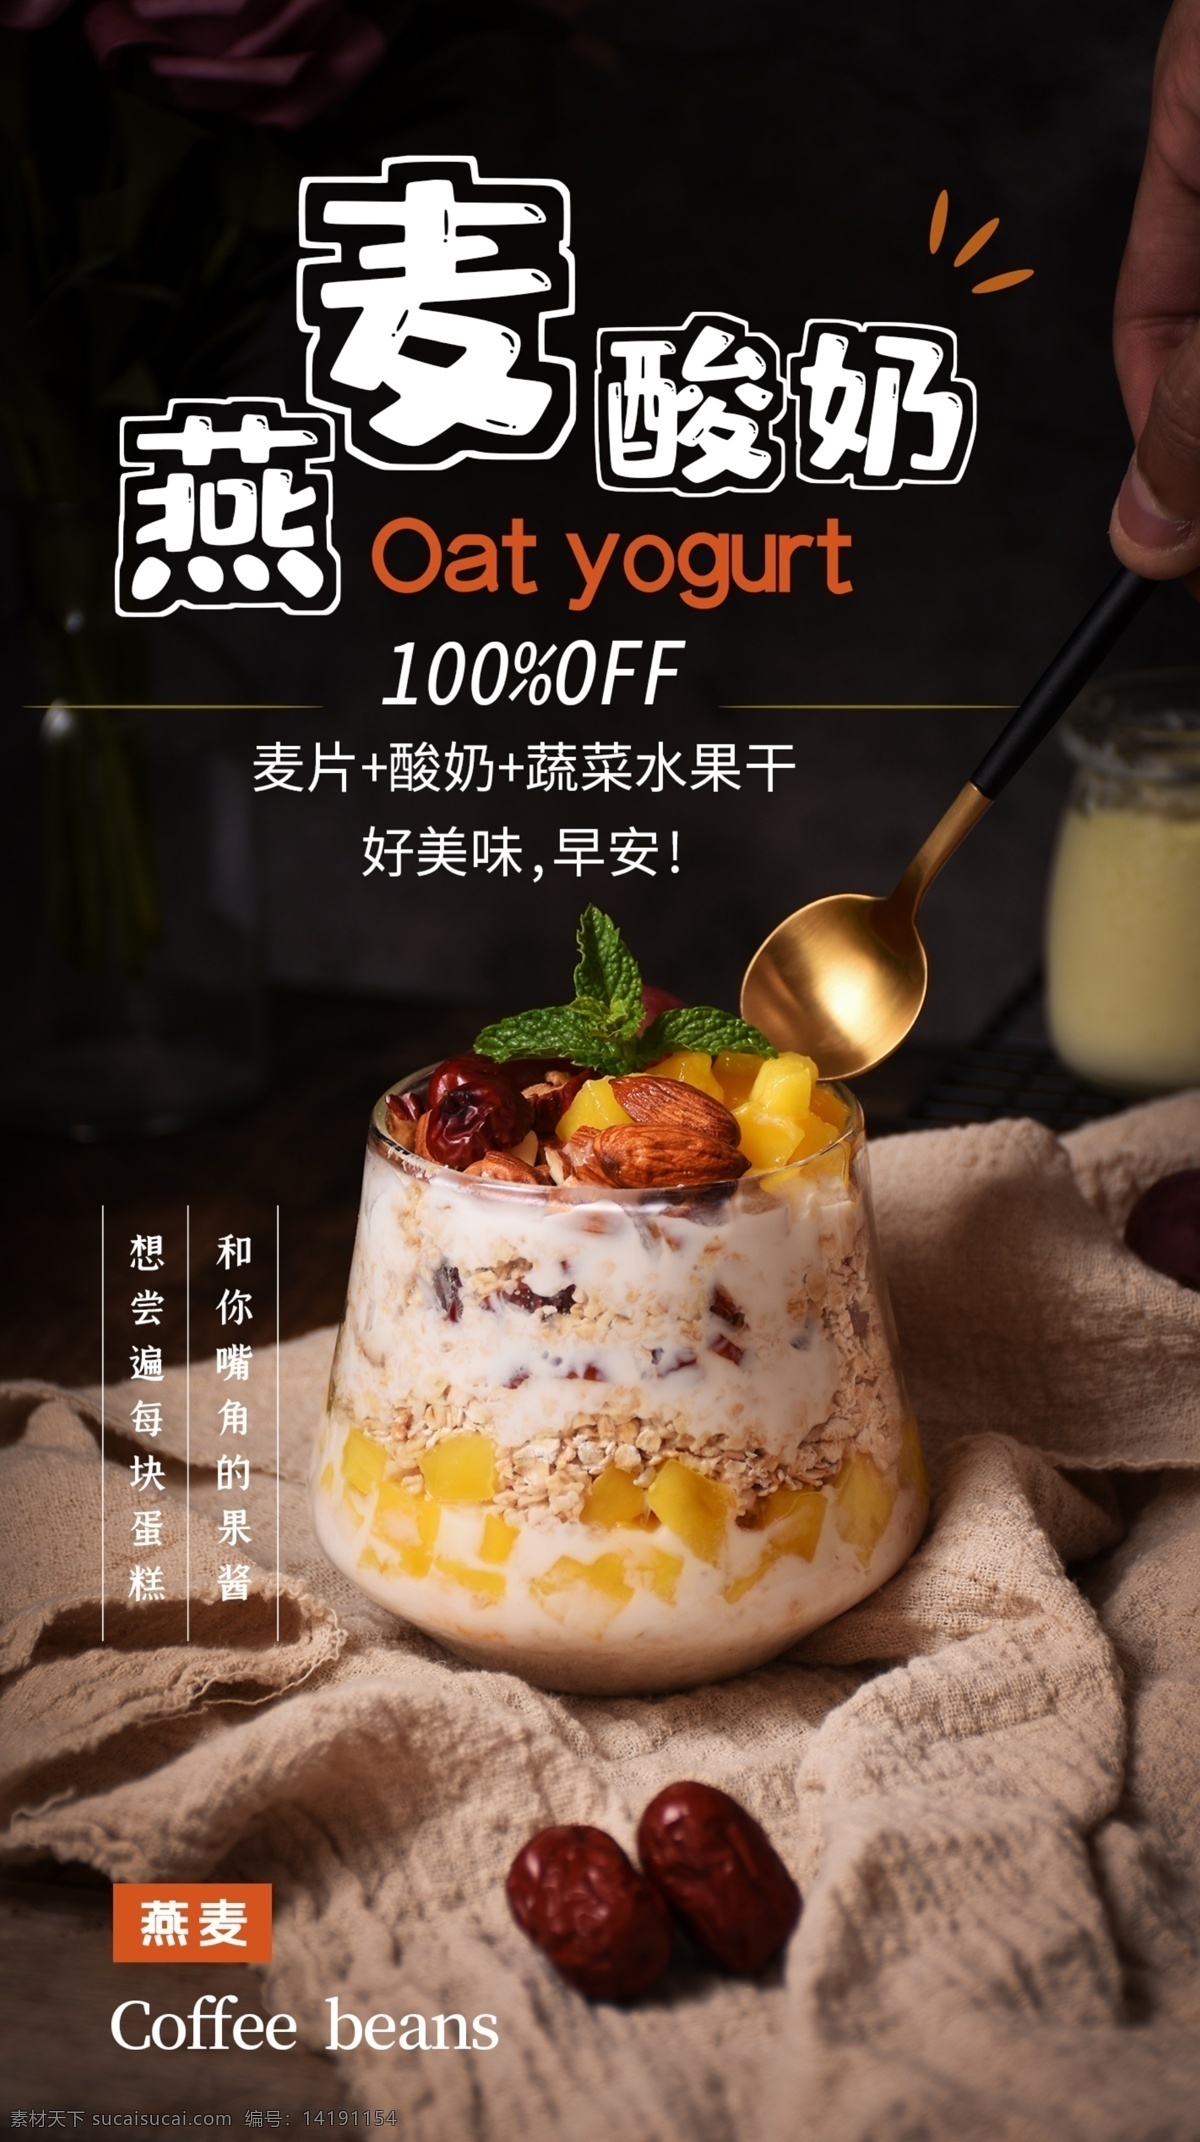 燕麦 酸奶 甜品 活动 海报 素材图片 燕麦酸奶 饮料 饮品 类